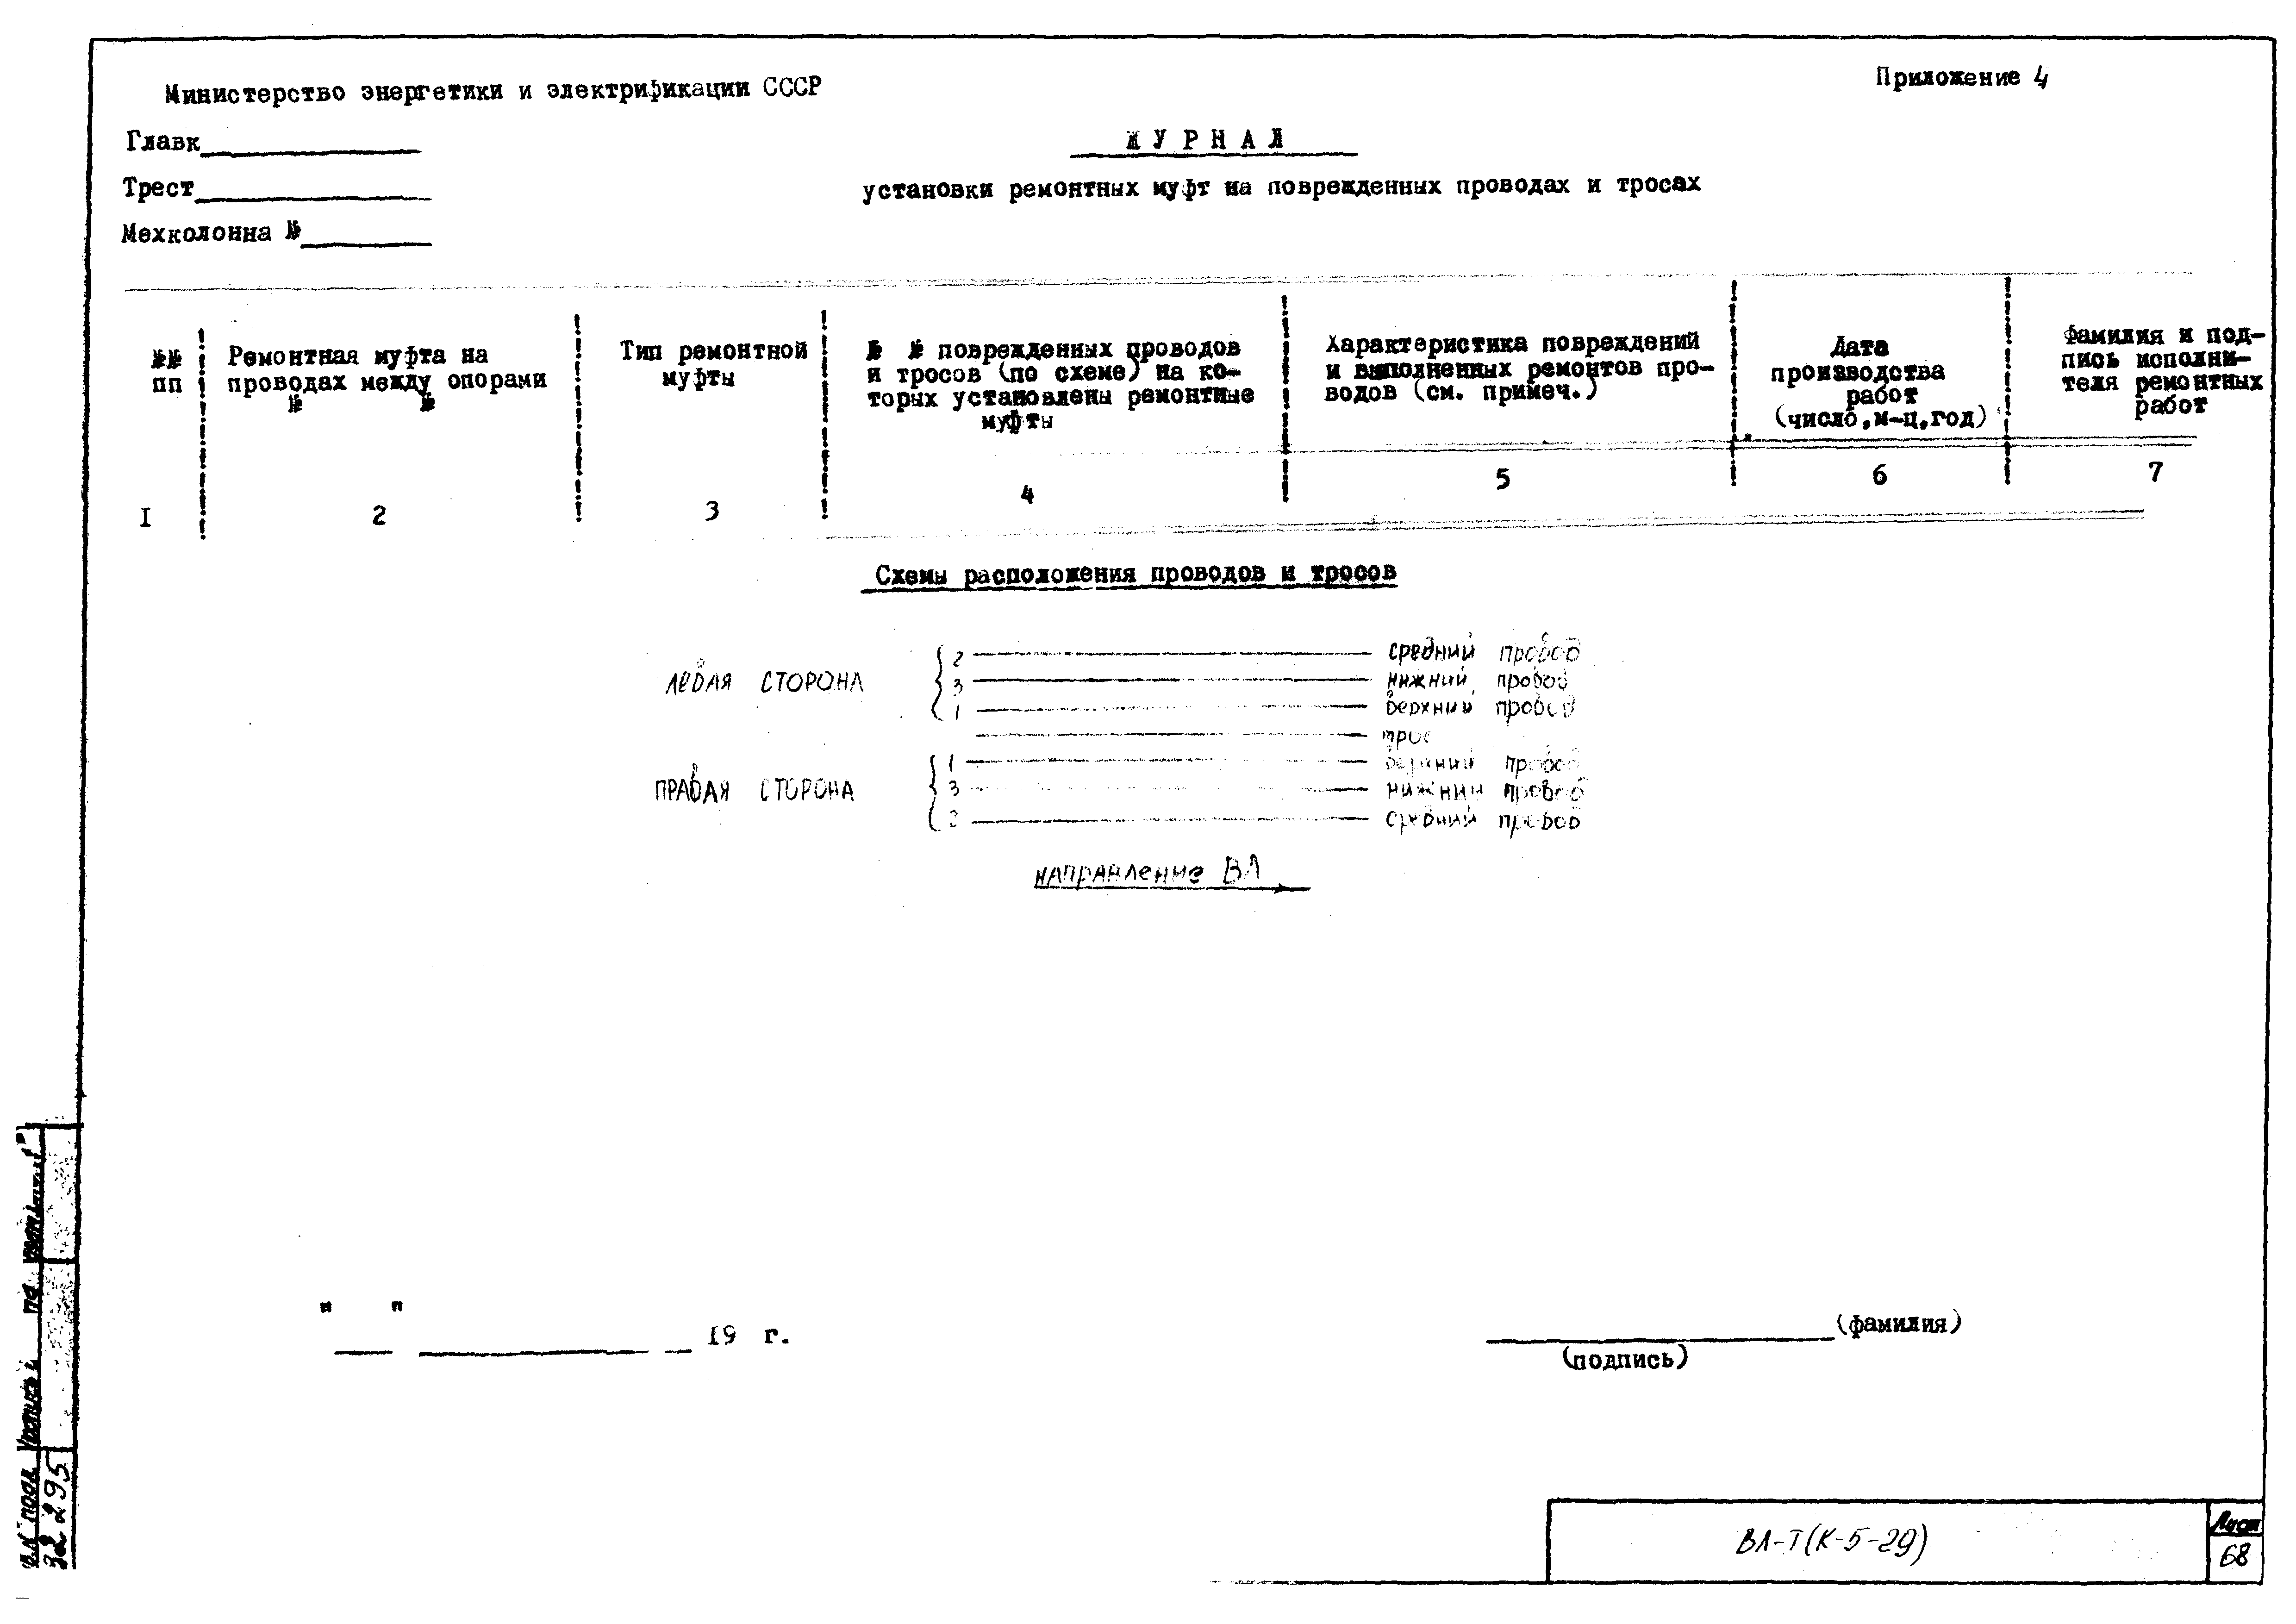 Технологическая карта К-5-29-7